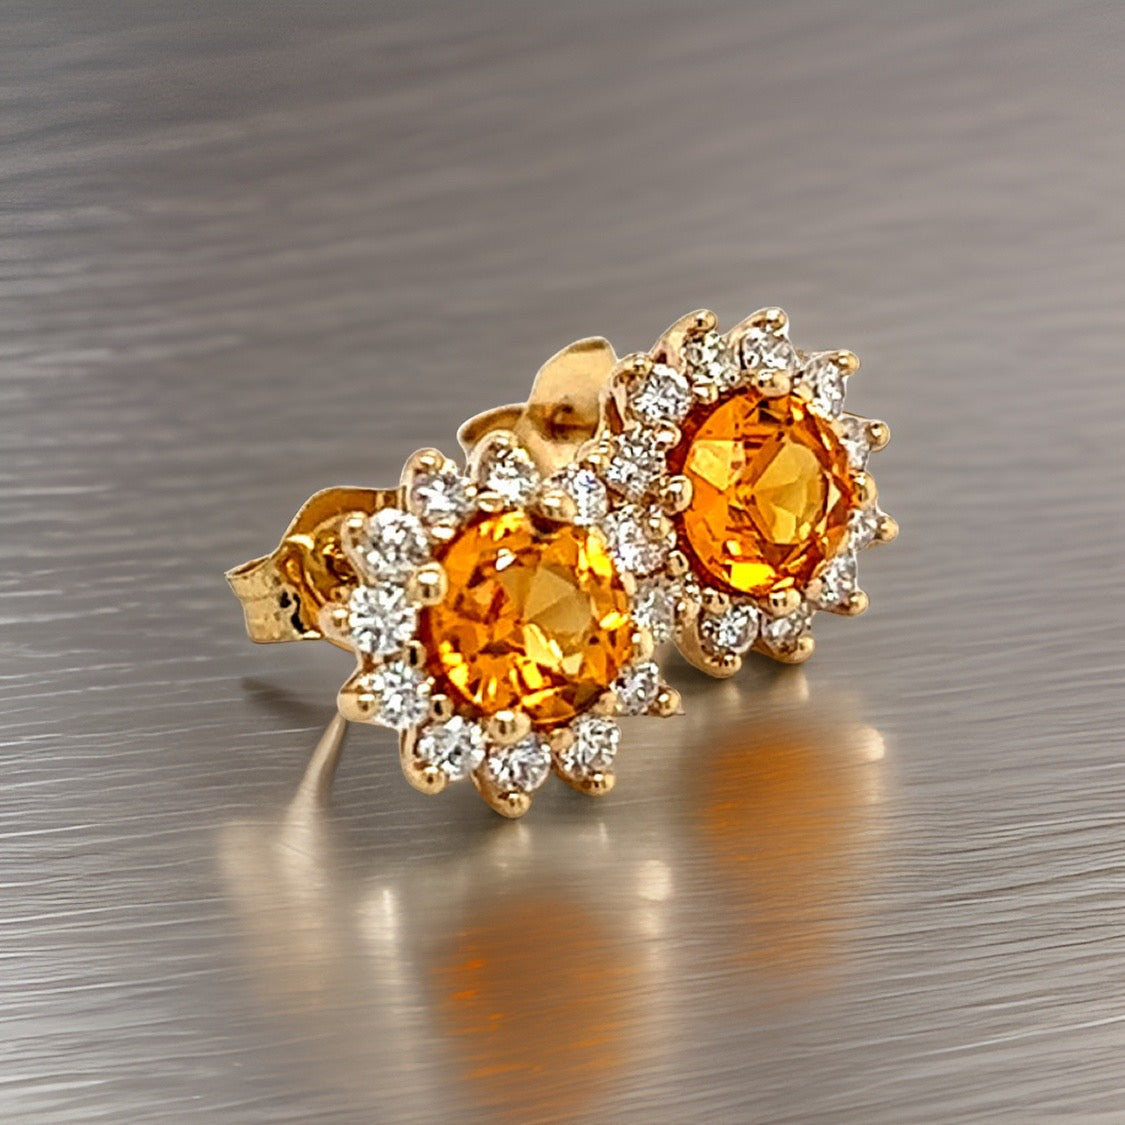 Natural Sapphire Diamond Earrings 14k Y Gold 1.48 TCW Certified $4,950 211354 - Certified Fine Jewelry